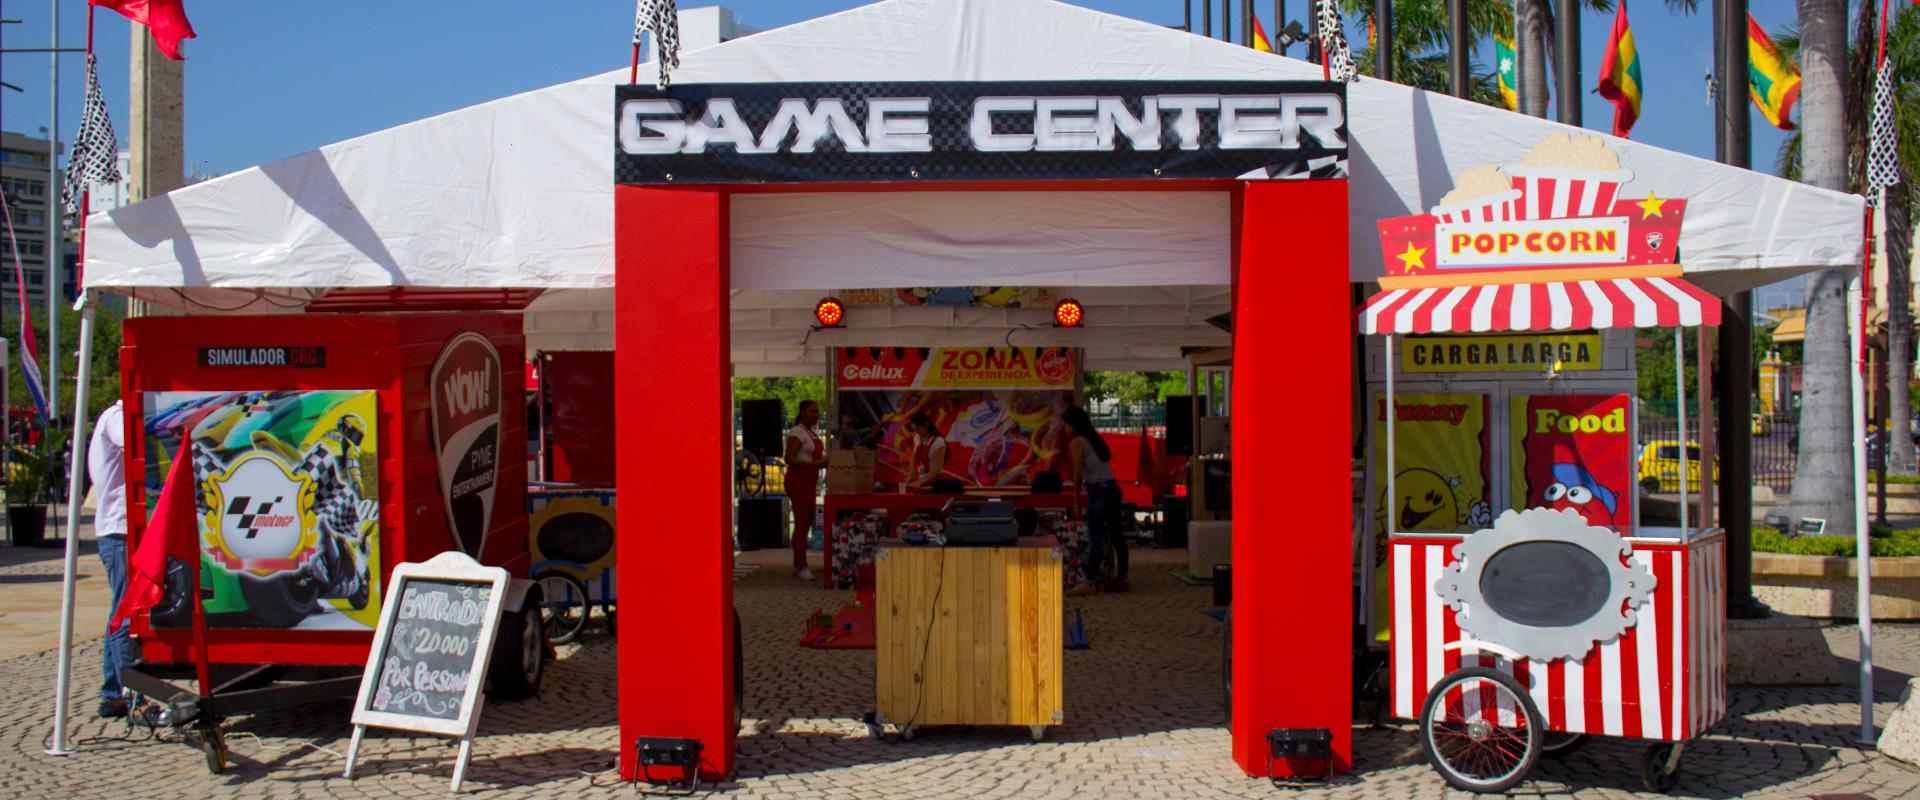 Game Center - Servicios Diego WOW